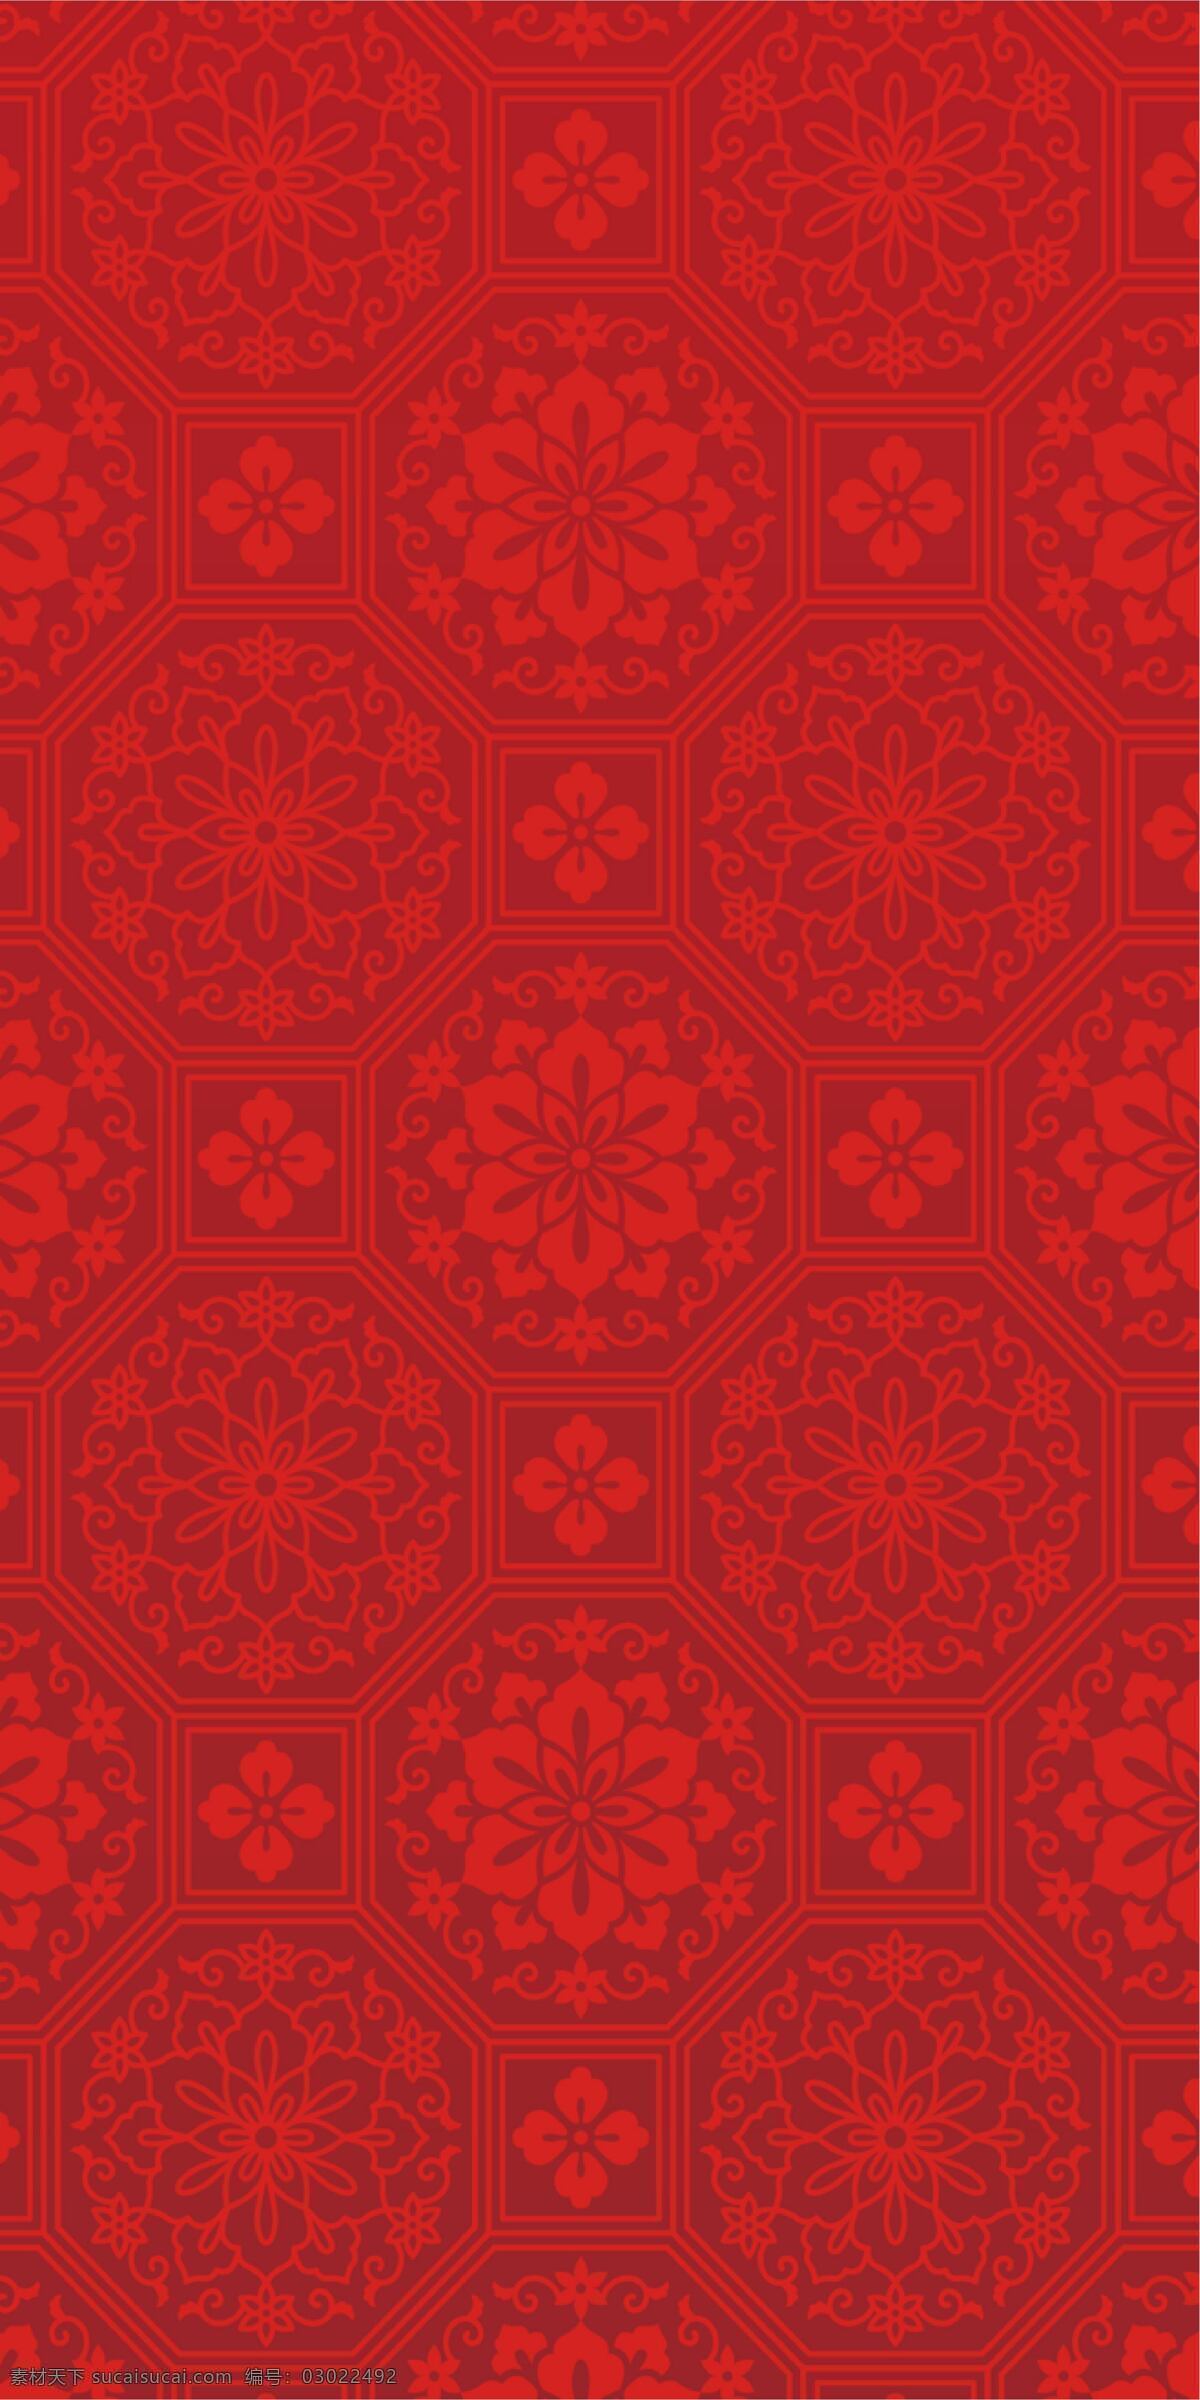 红色图片 圣诞节 插画 元素 背景 海报 底纹边框 背景底纹